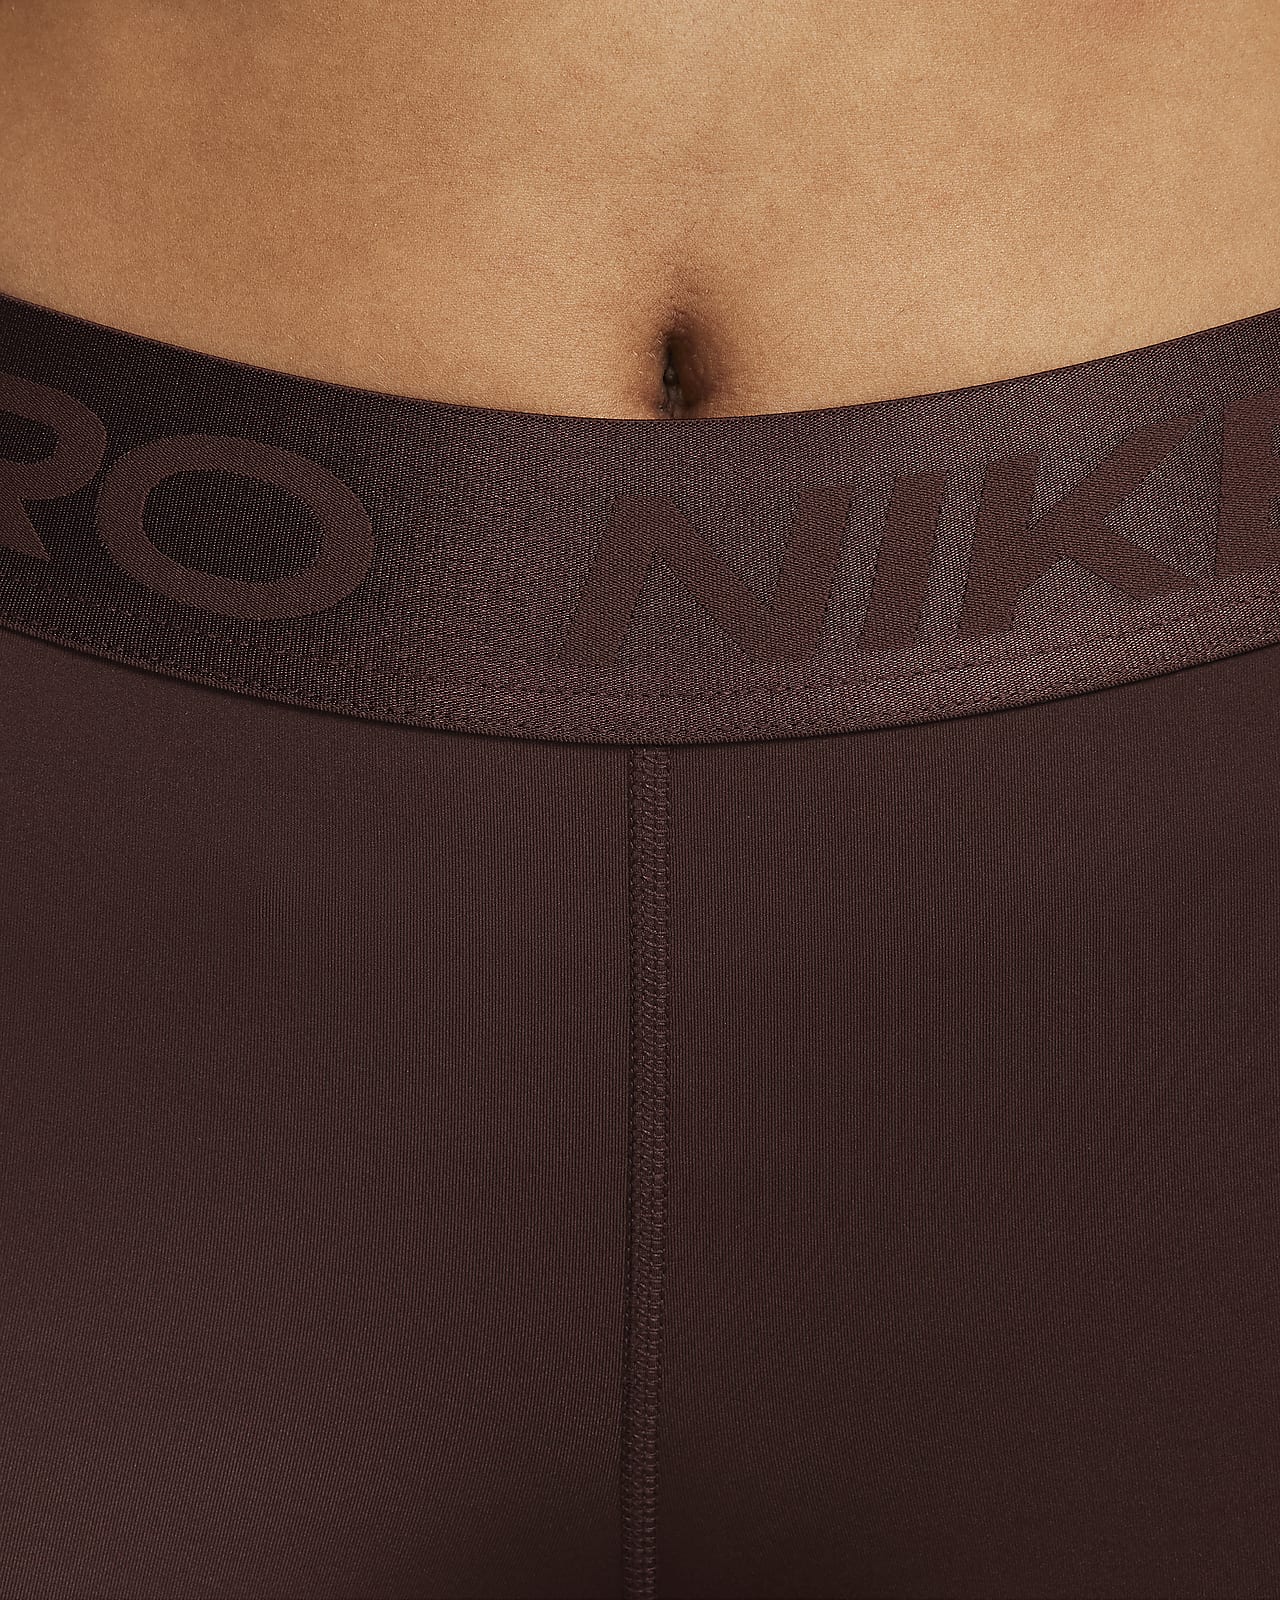 Nike Pro Women's Mid-Rise 3 Shorts